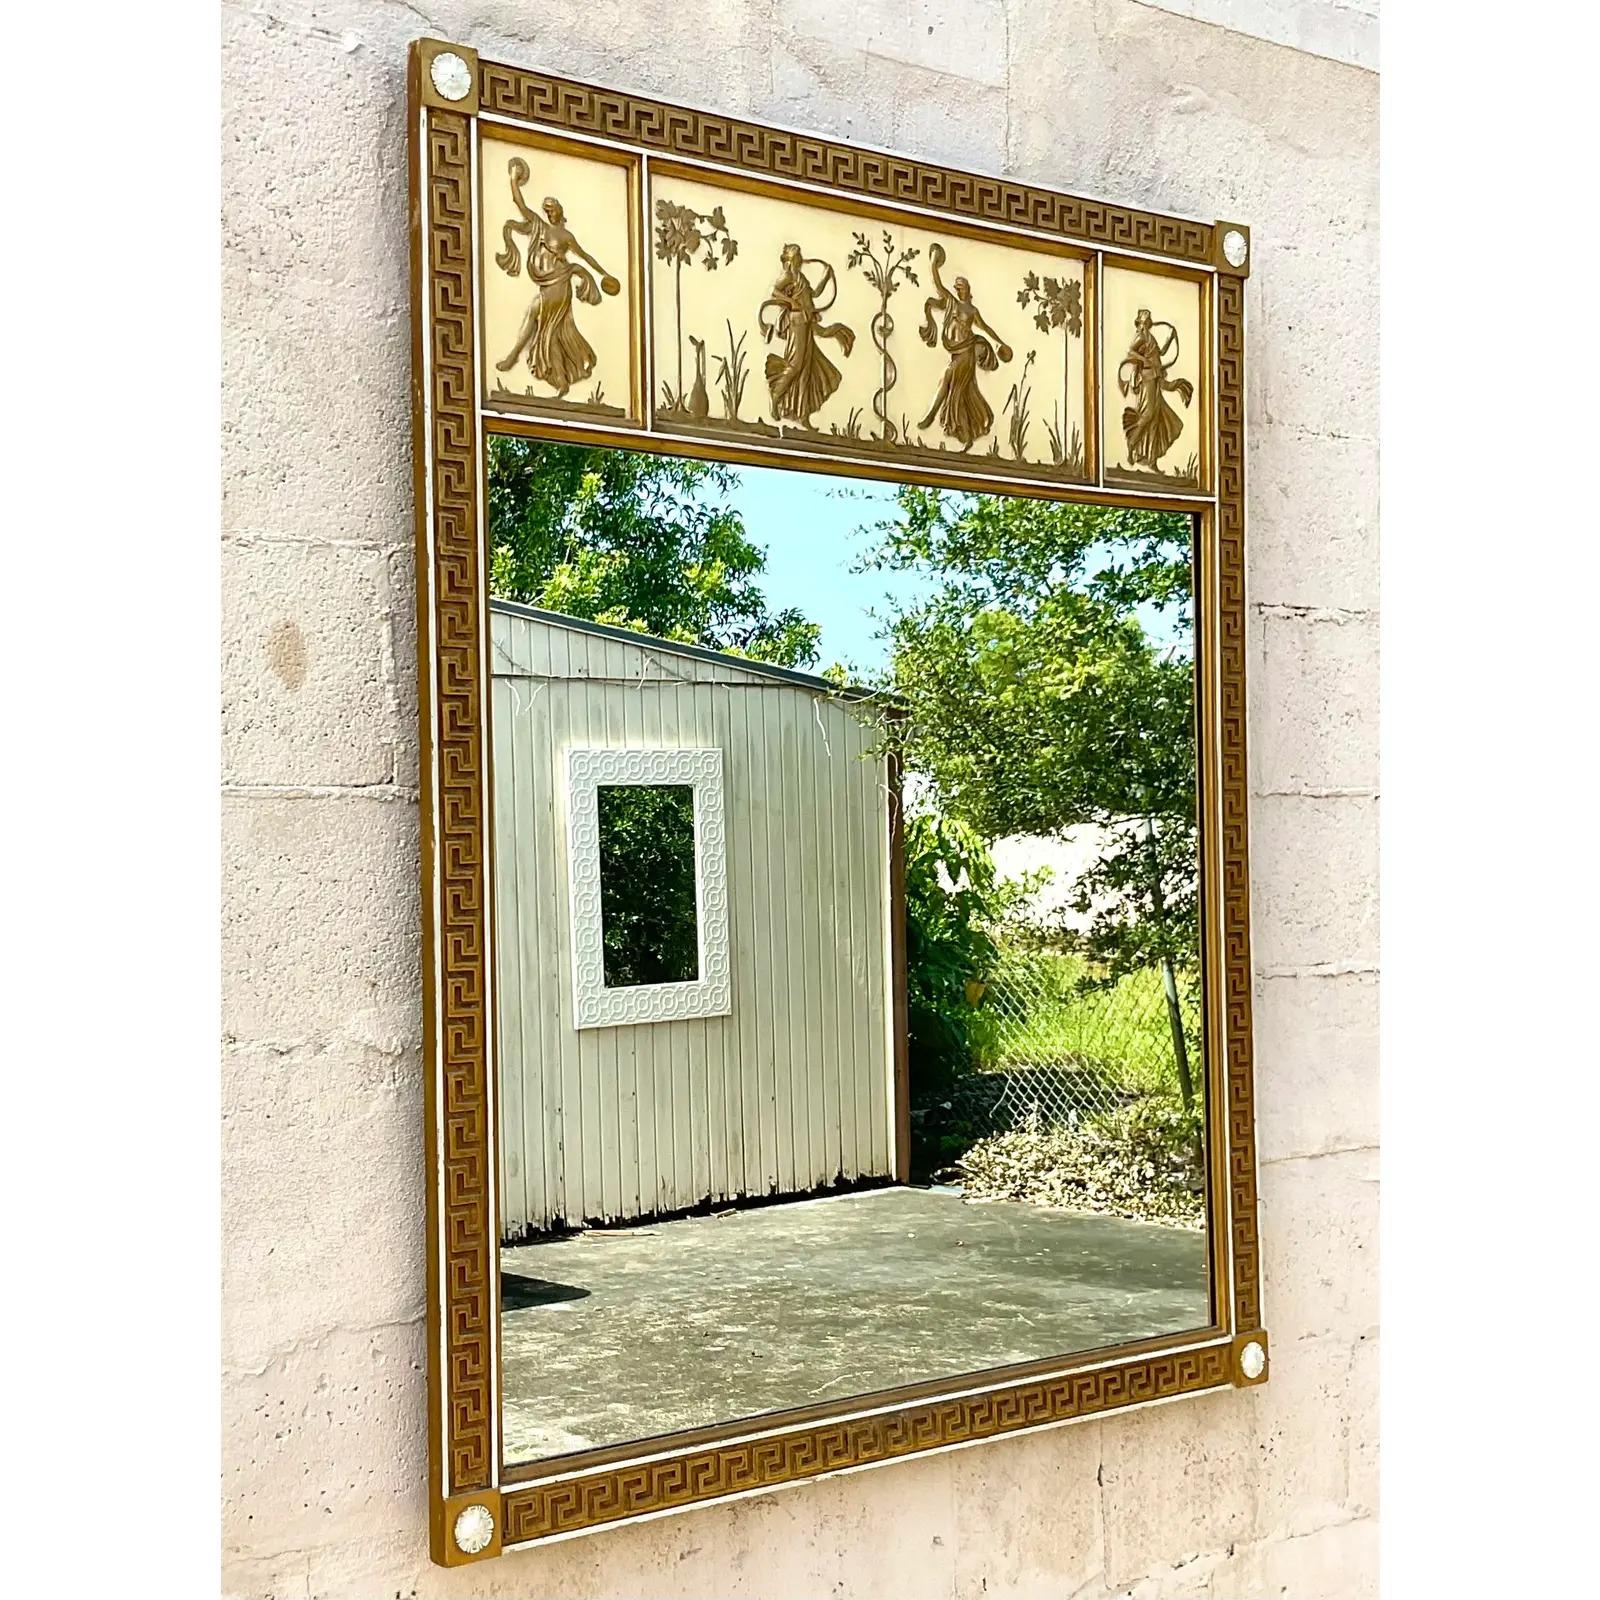 Fantastique miroir mural vintage Regency. Magnifique motif de clé grecque avec des figures dansantes sur le dessus. Un vrai coup d'éclat. Finition dorée chic sur un fond ivoire. Acquis d'une propriété de Palm Beach.